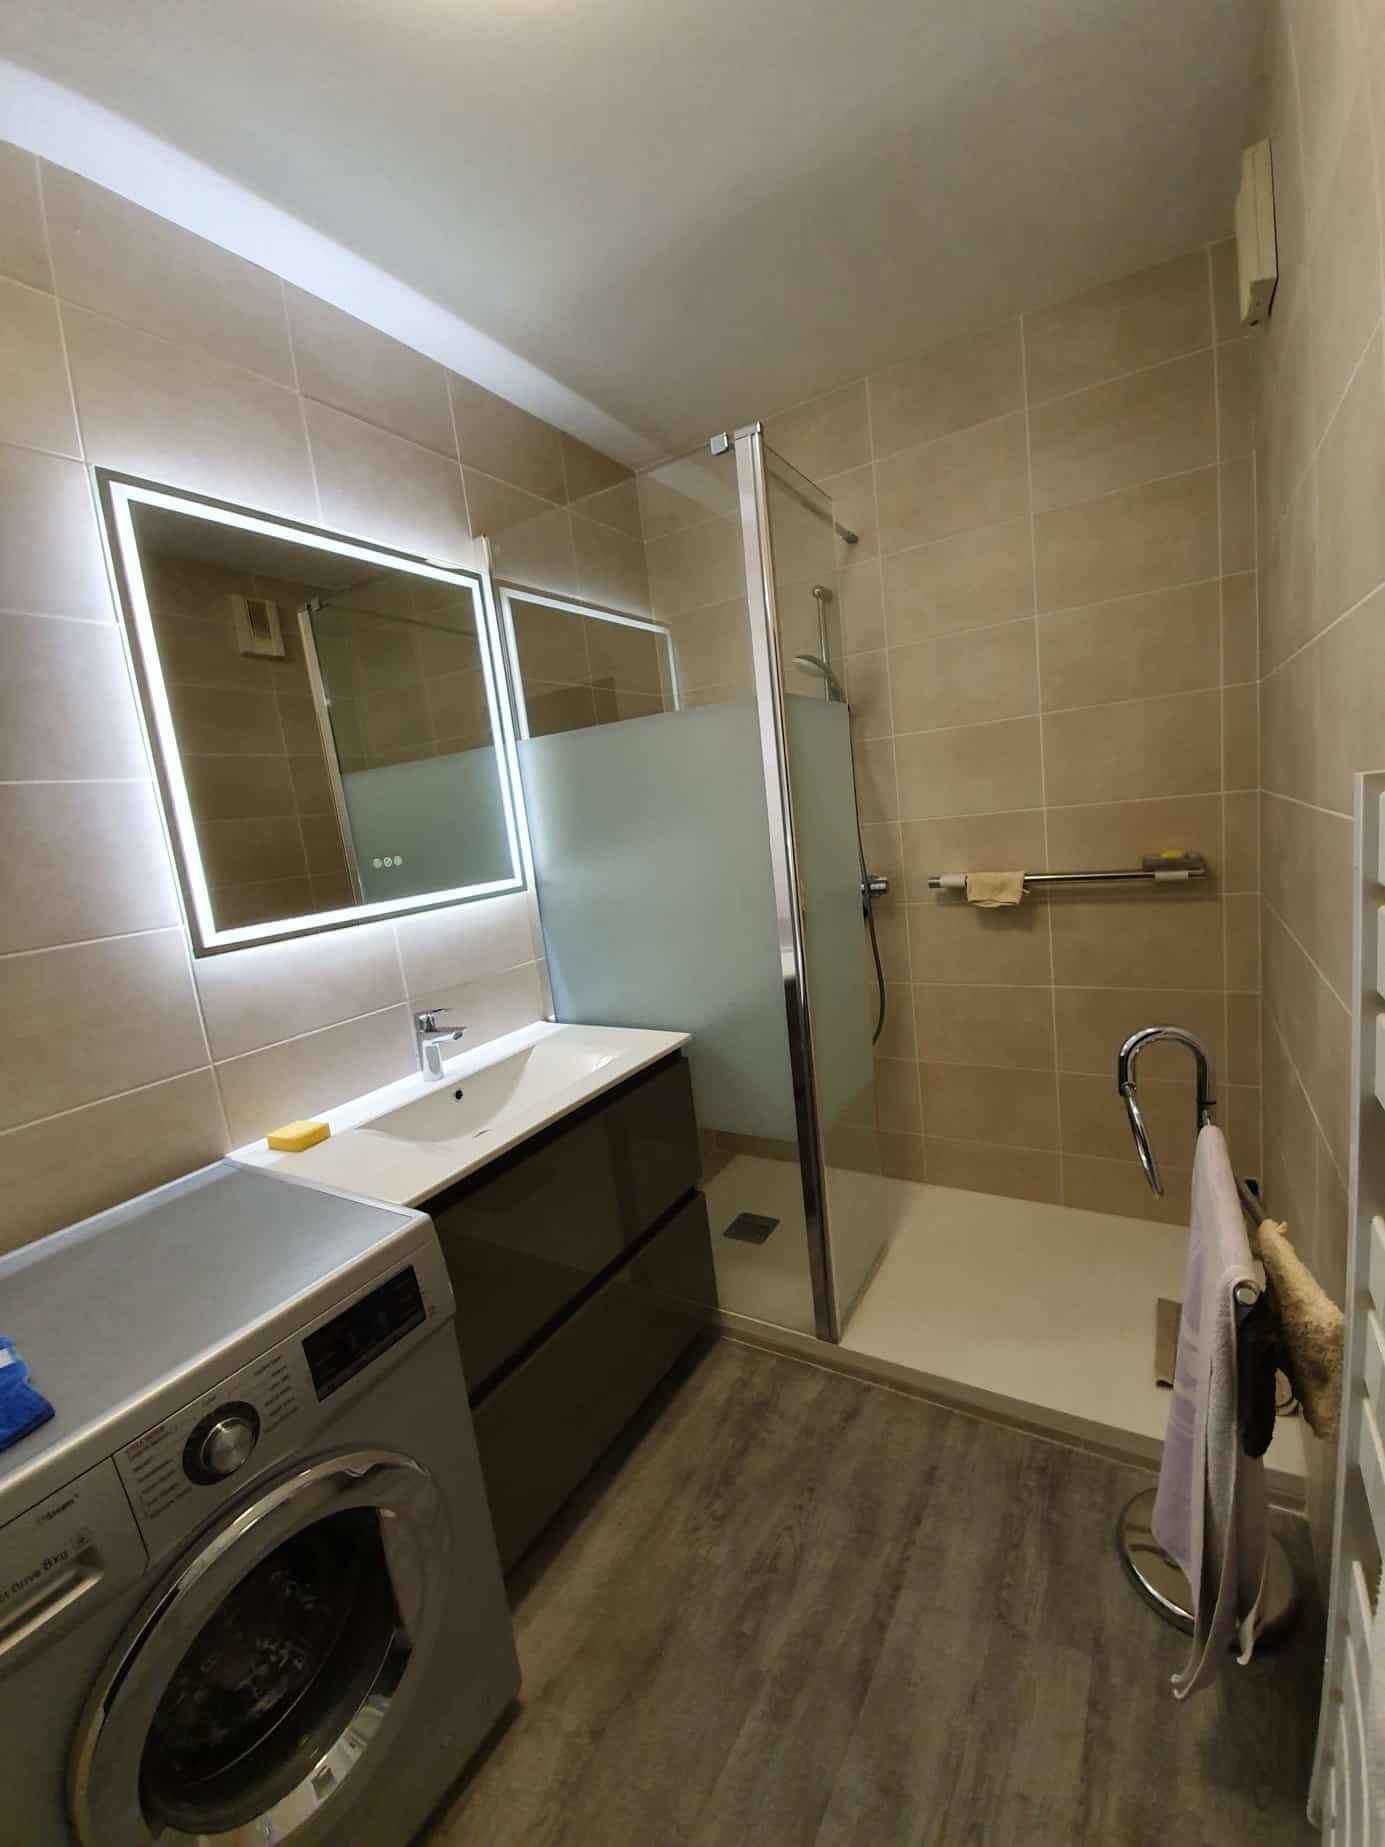 Angers - Remplacement baignoire en douche. Installation nouveau meuble vasque avec miroir avec LED intégrée. Sol antidérapant PVC.